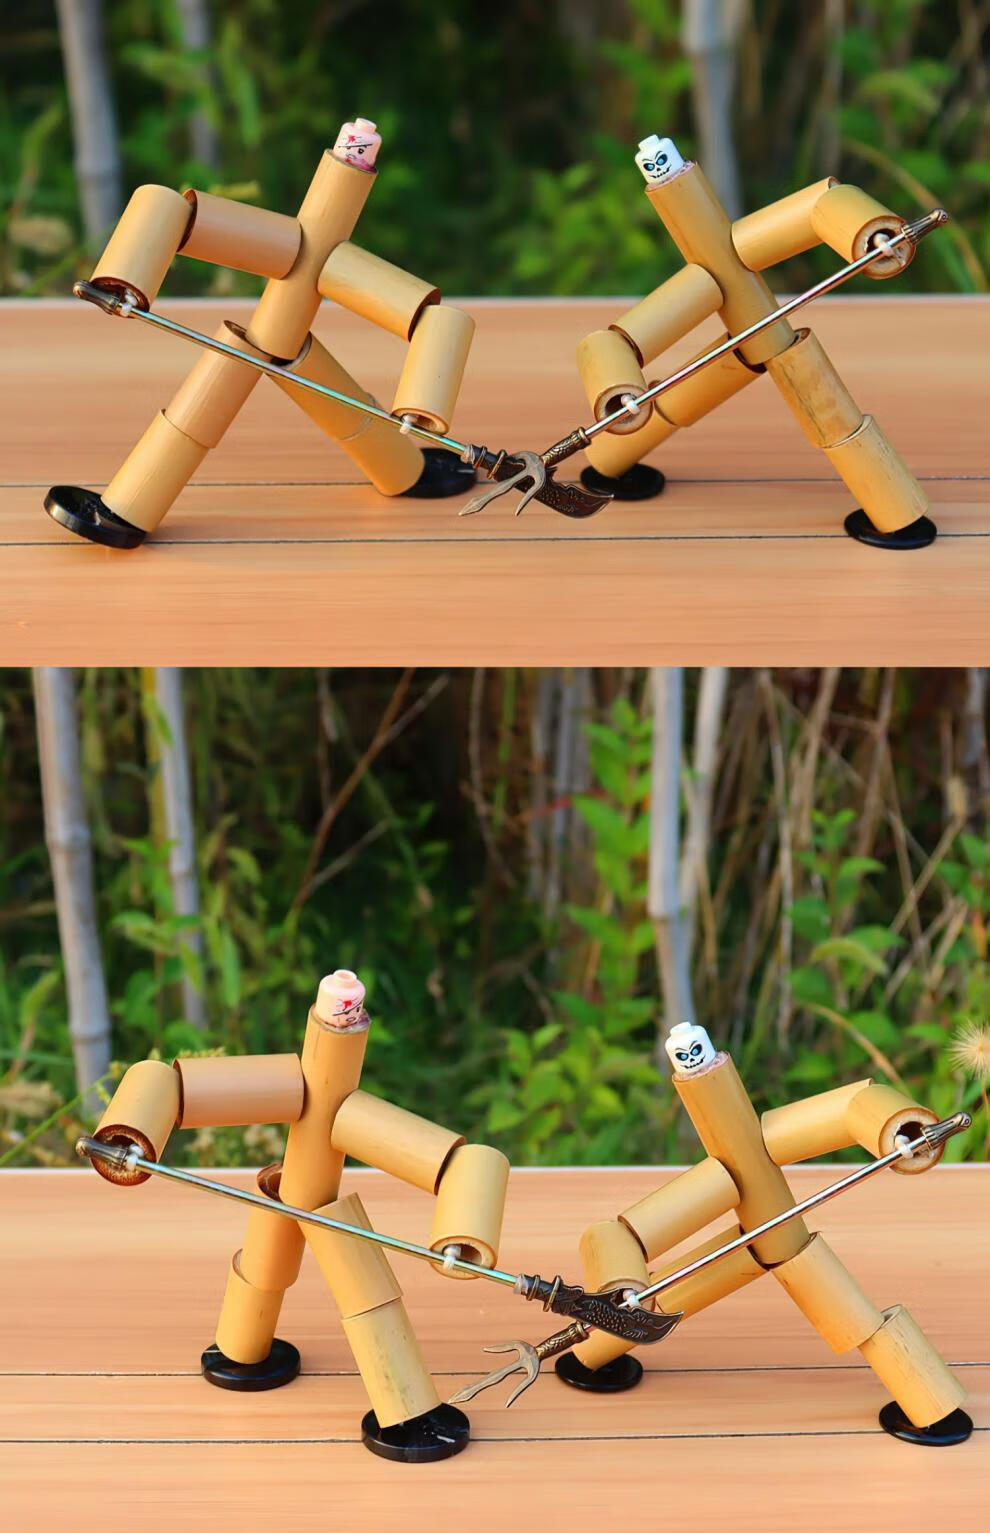 竹子做的简单小玩具图片